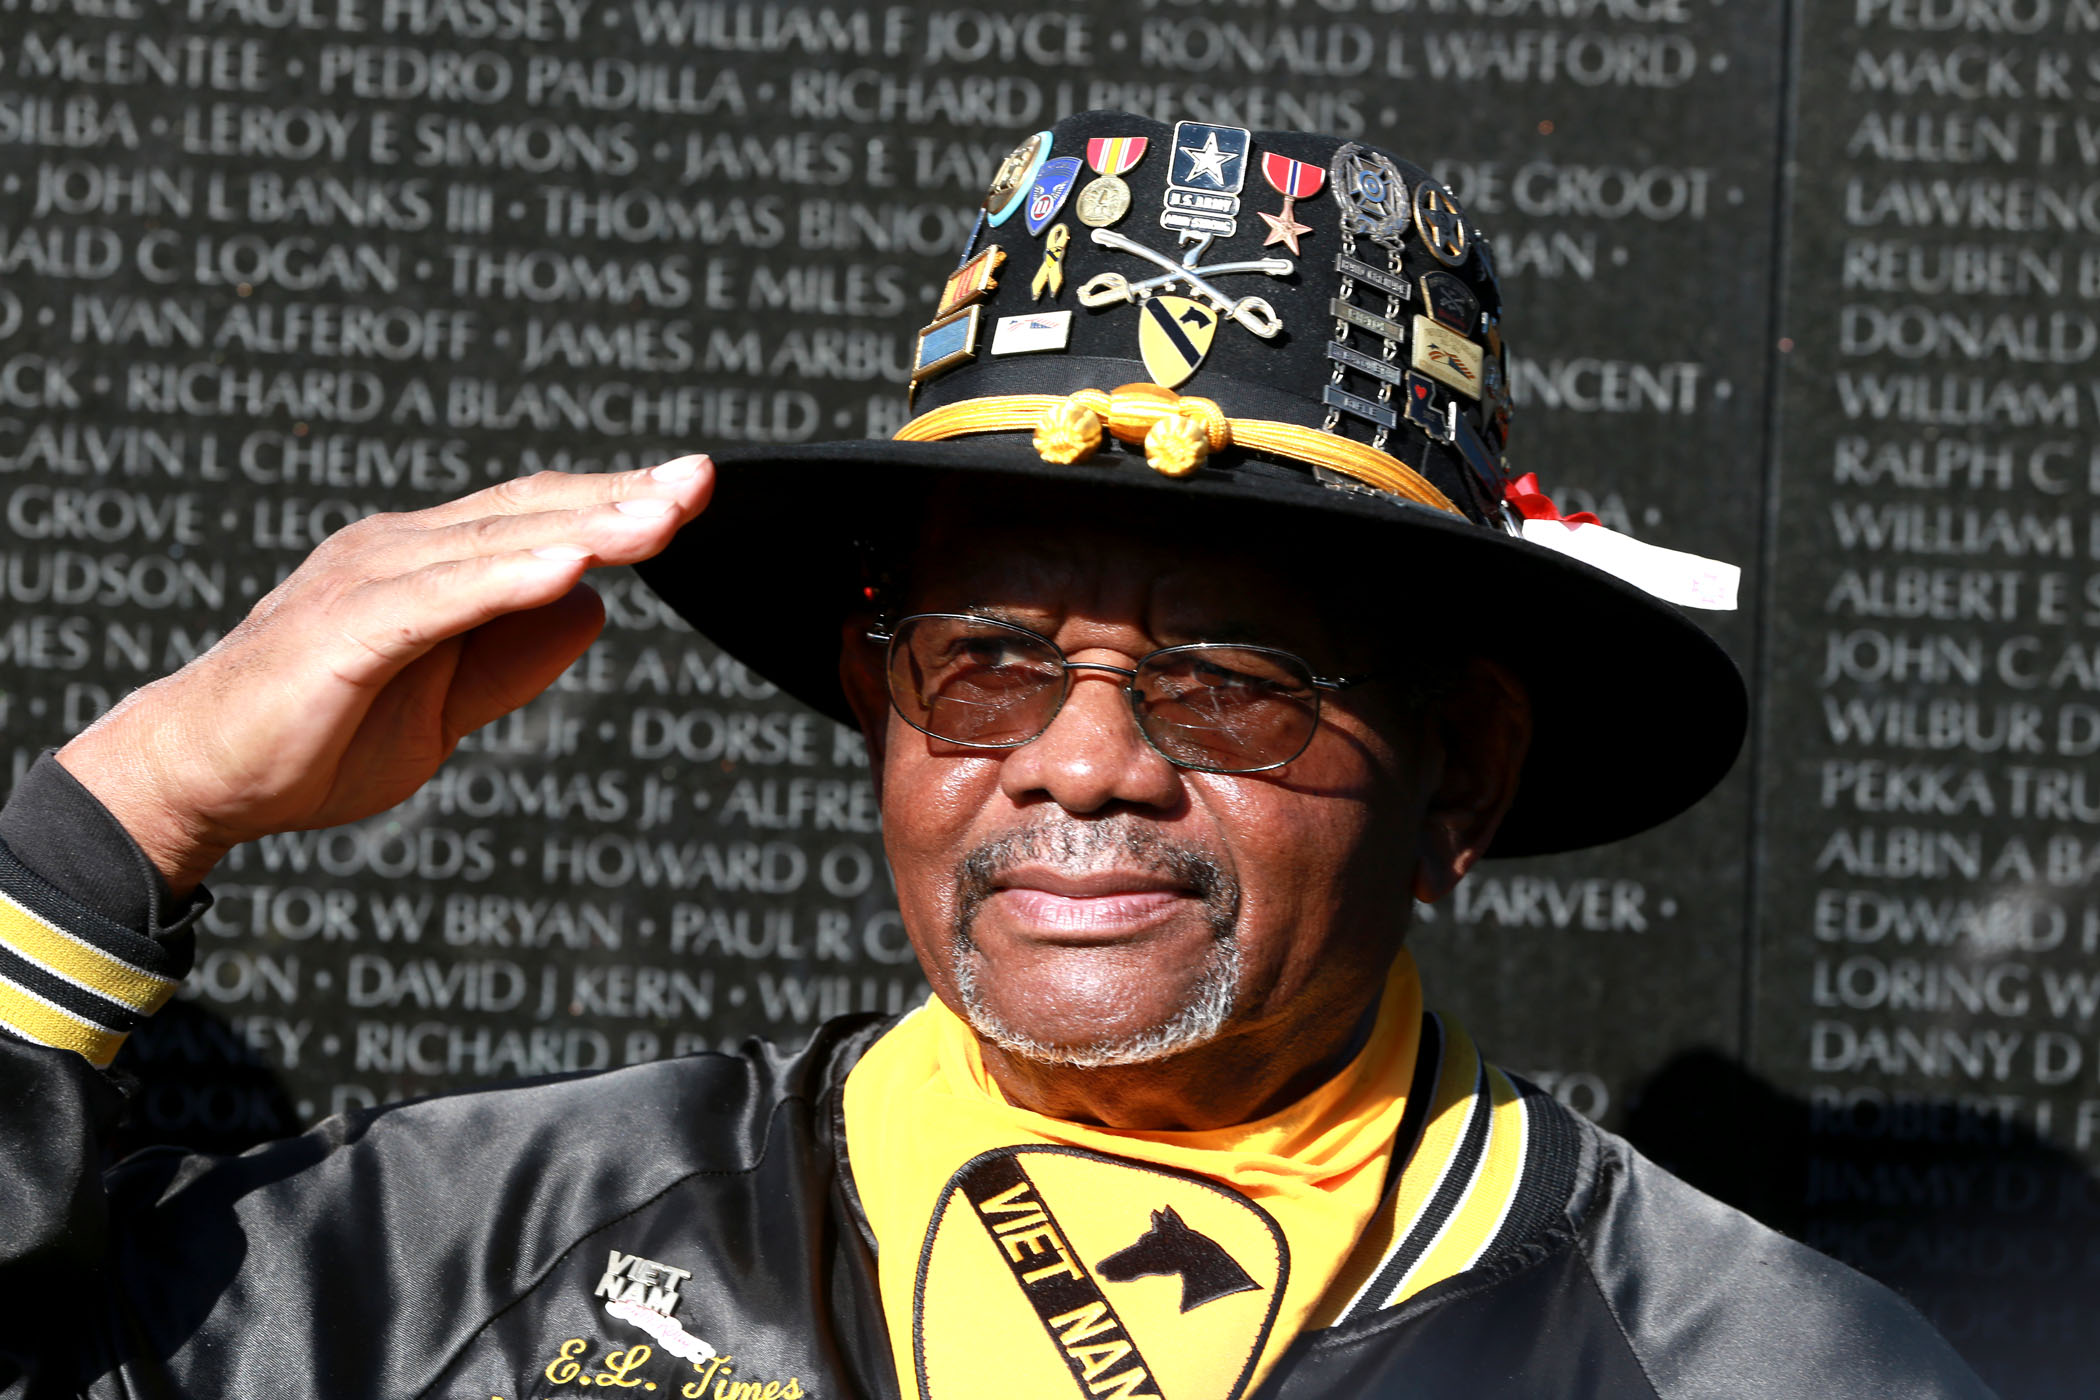 Veteran salutes in front of the Vietnam memorial in Washington D.C.